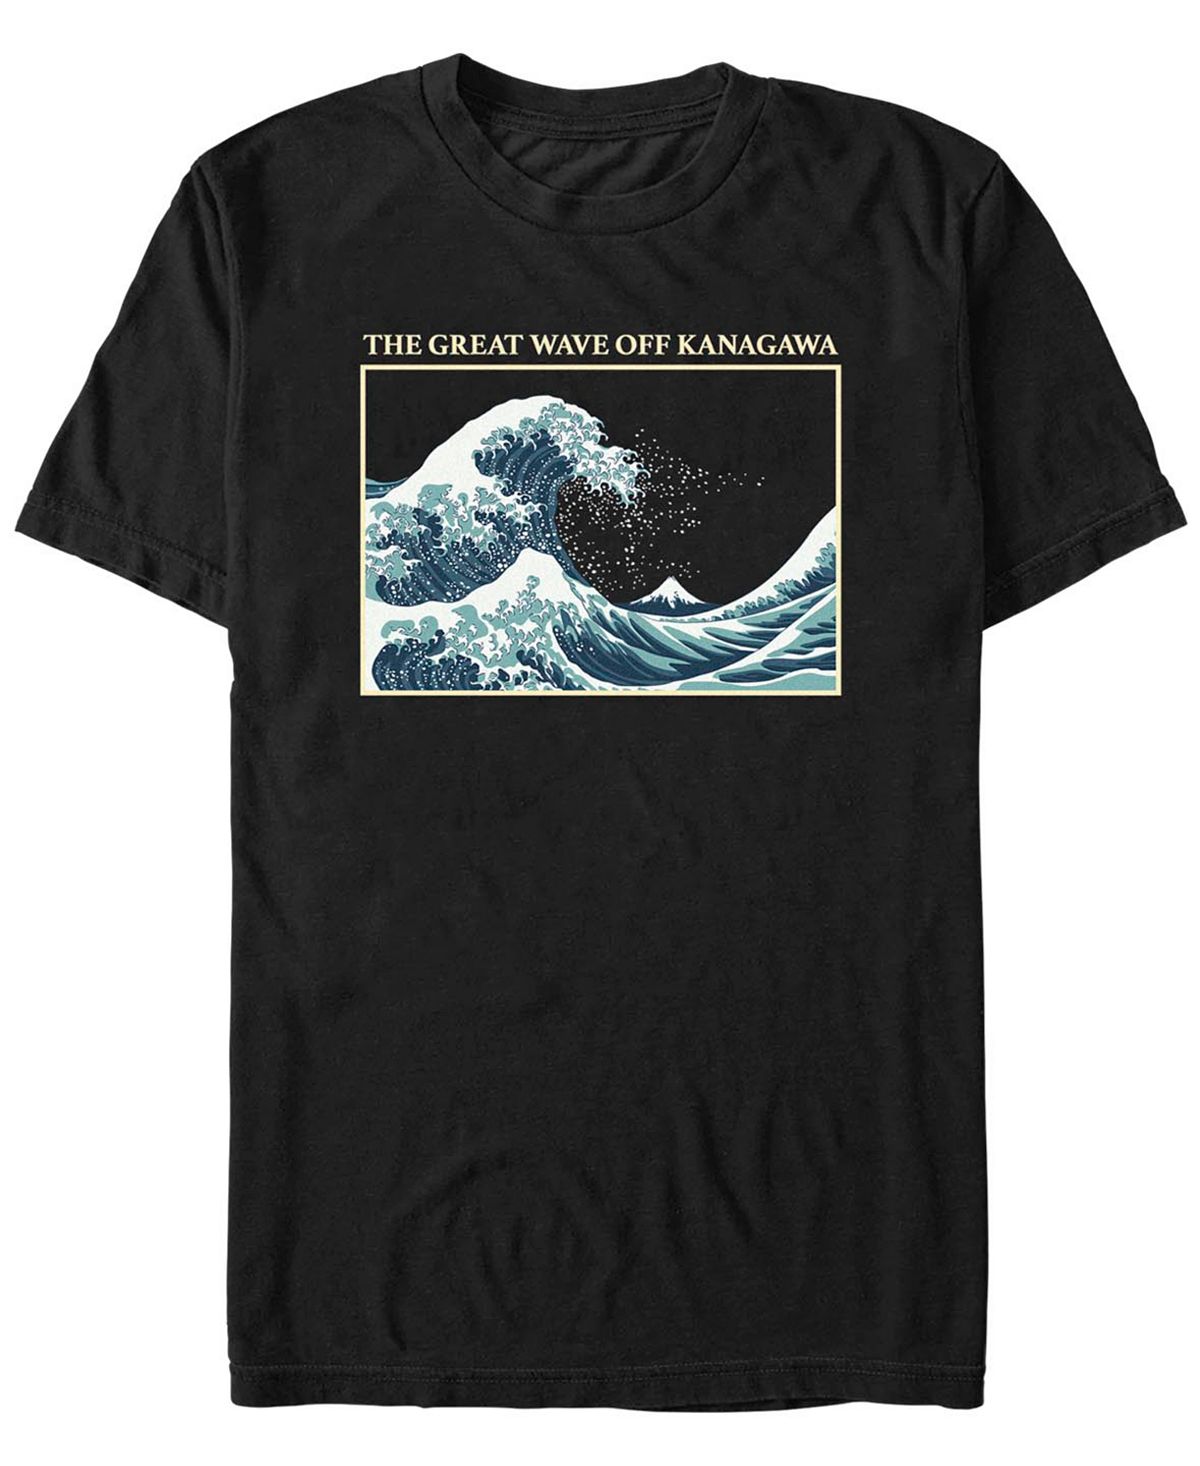 Мужская футболка Great Wave с короткими рукавами Fifth Sun мужская футболка cypress hill aztec skull с короткими рукавами минеральная стирка fifth sun черный